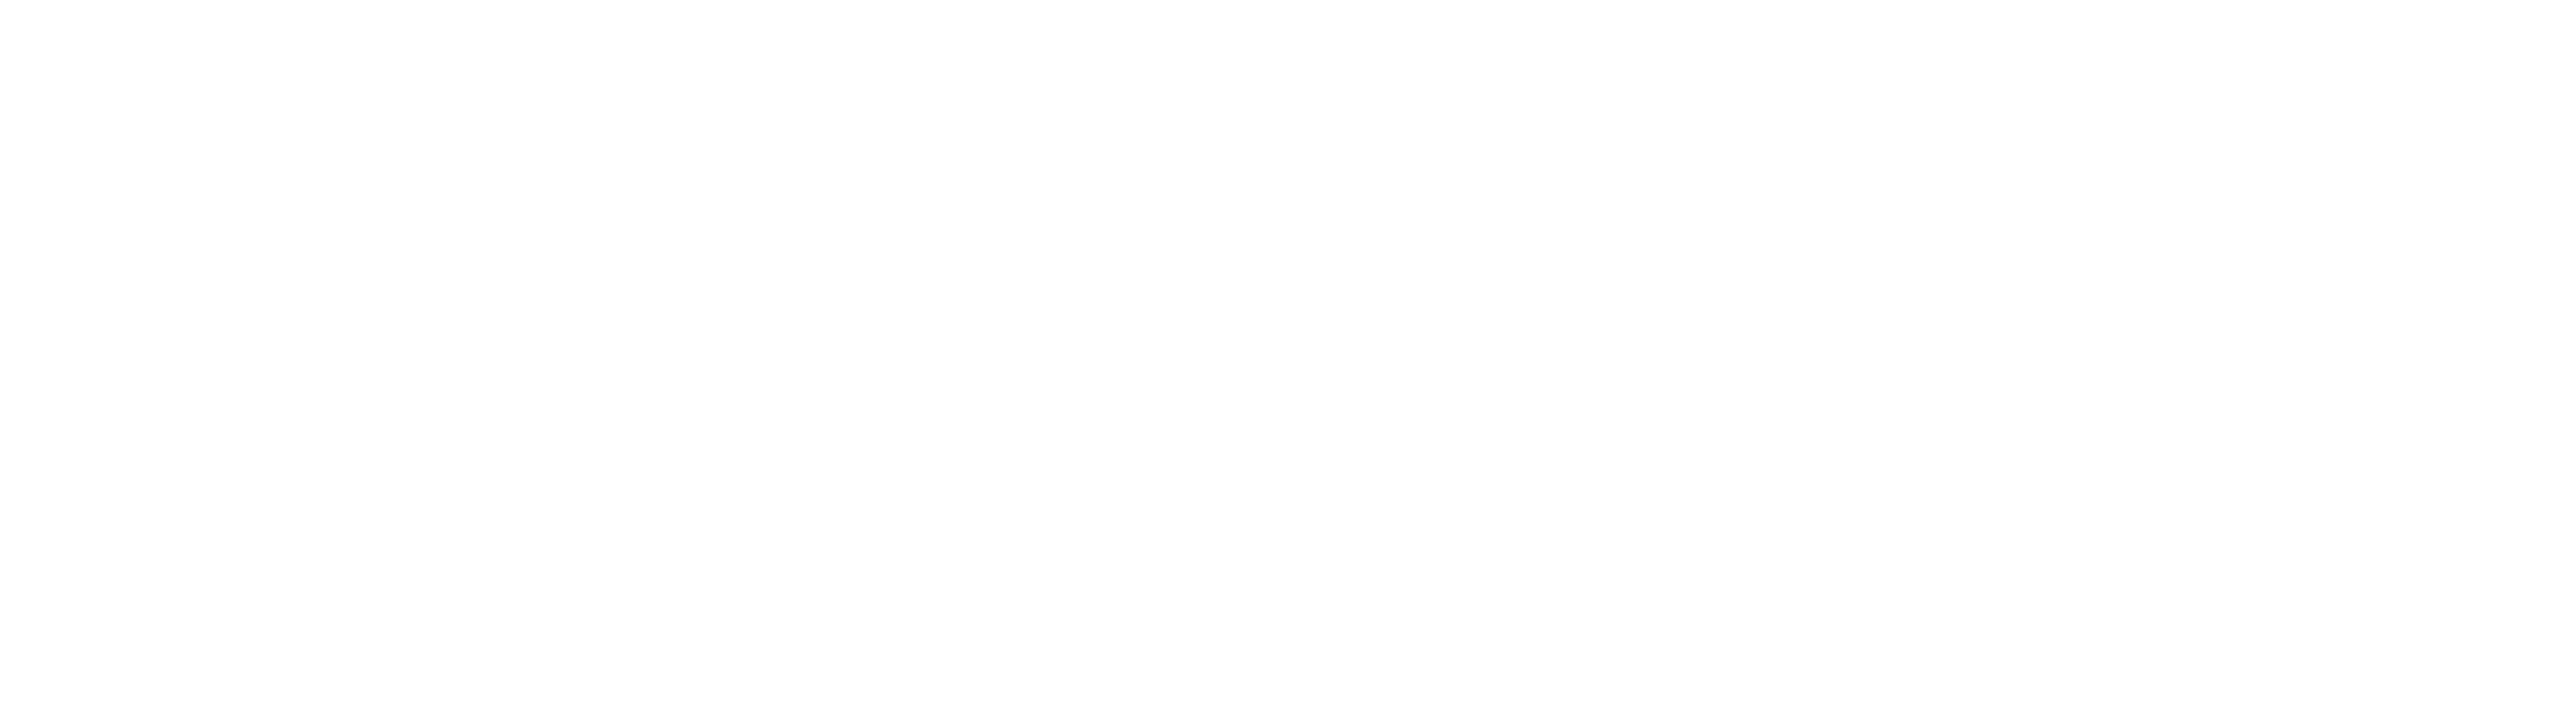 Prime Design Lab